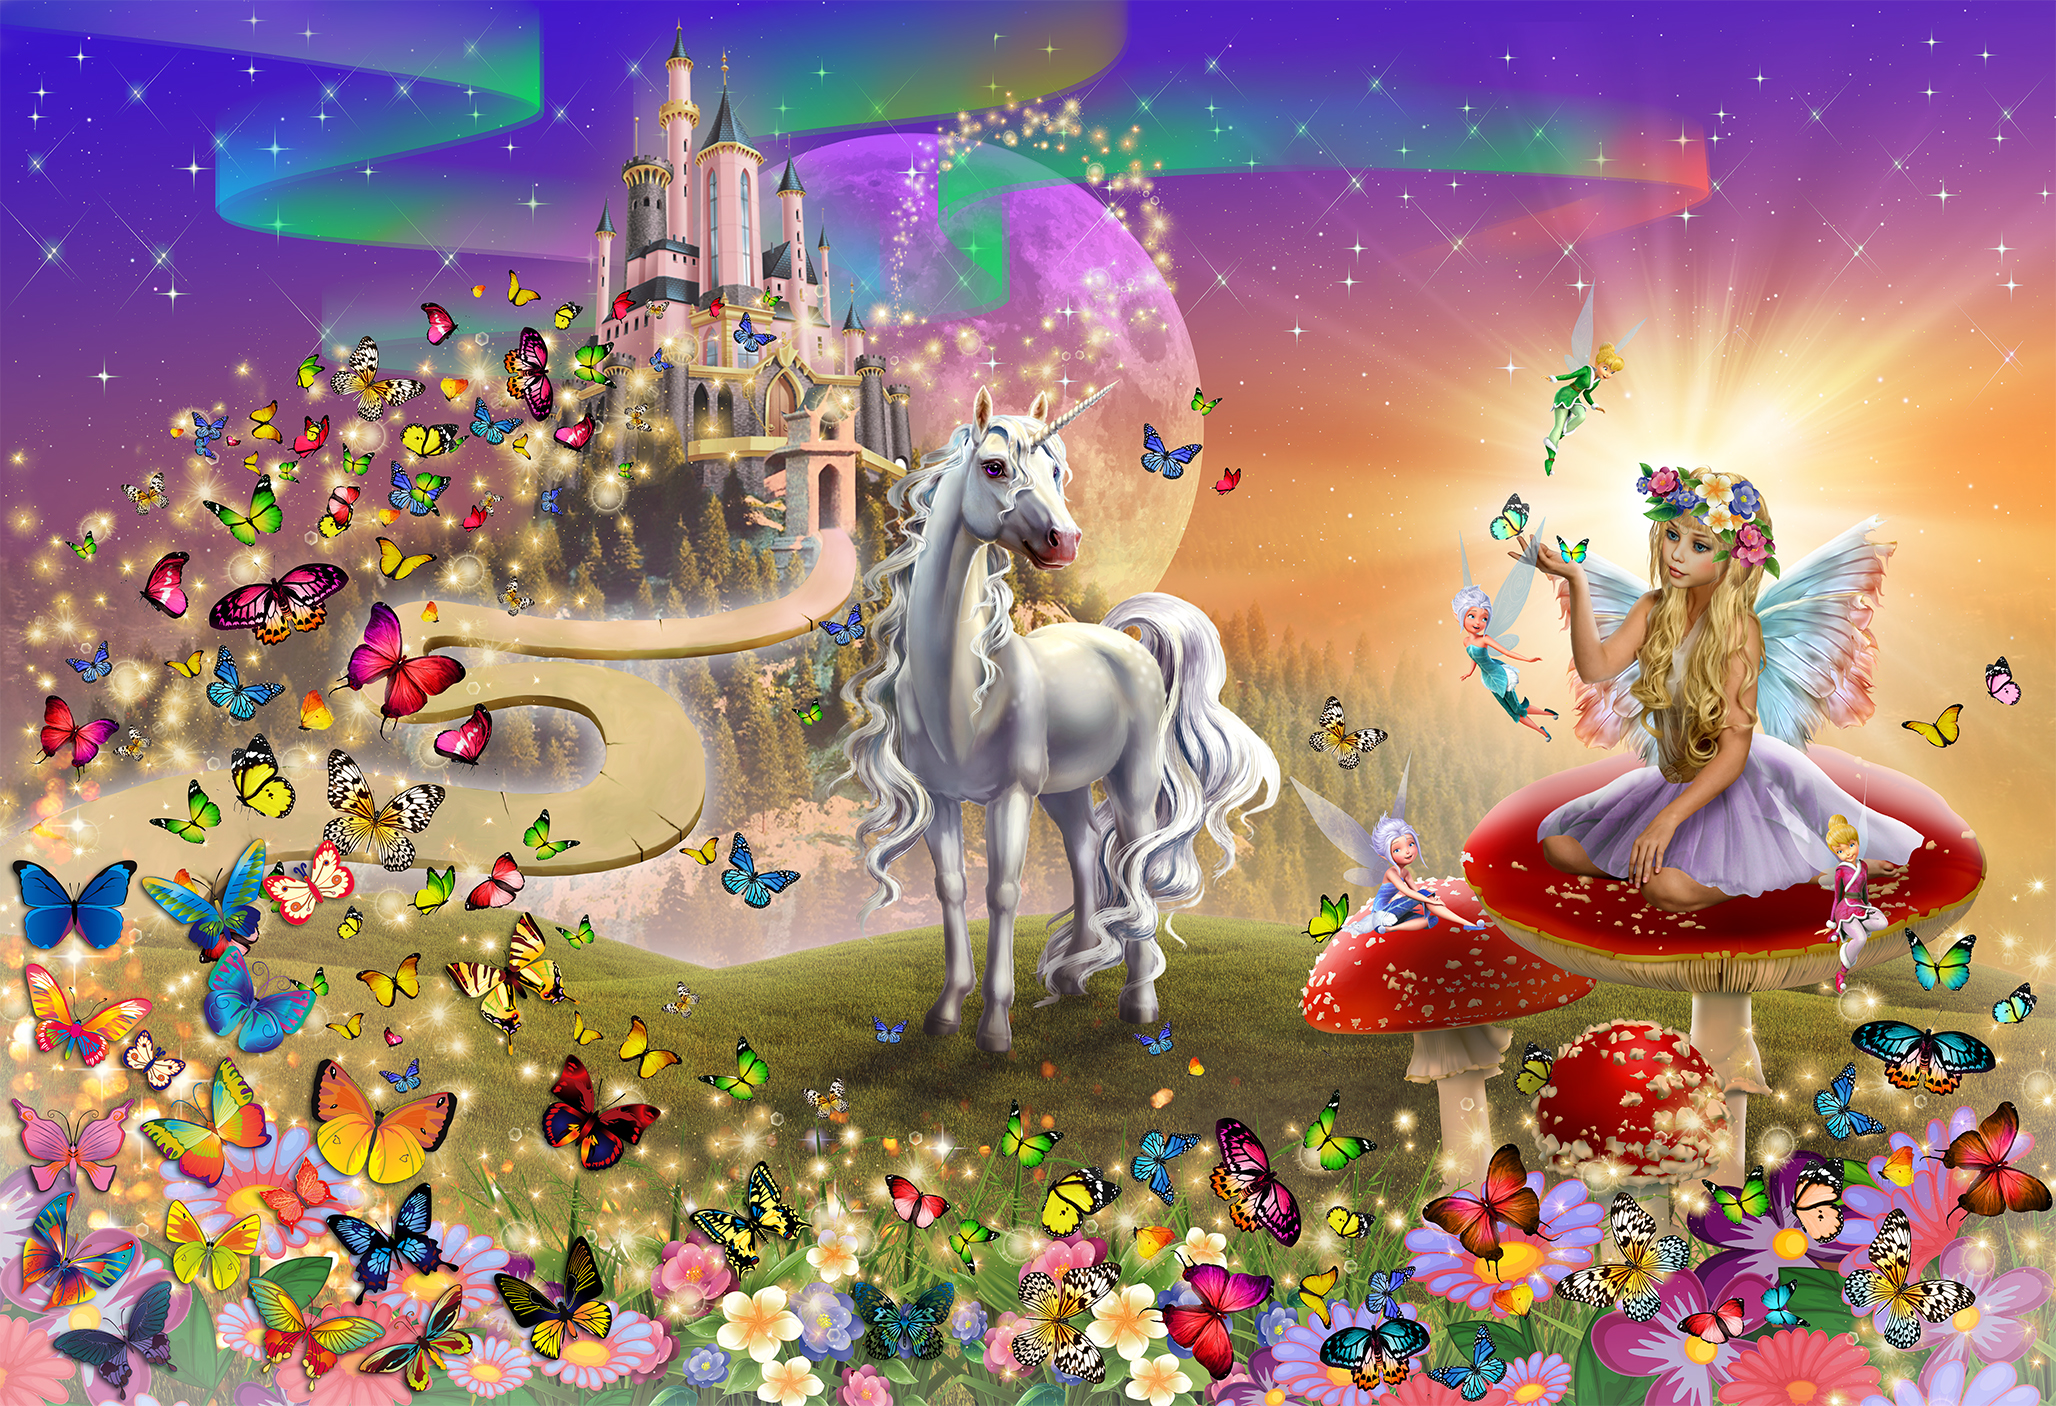 Принцесса фея и единорог в сказочном мире